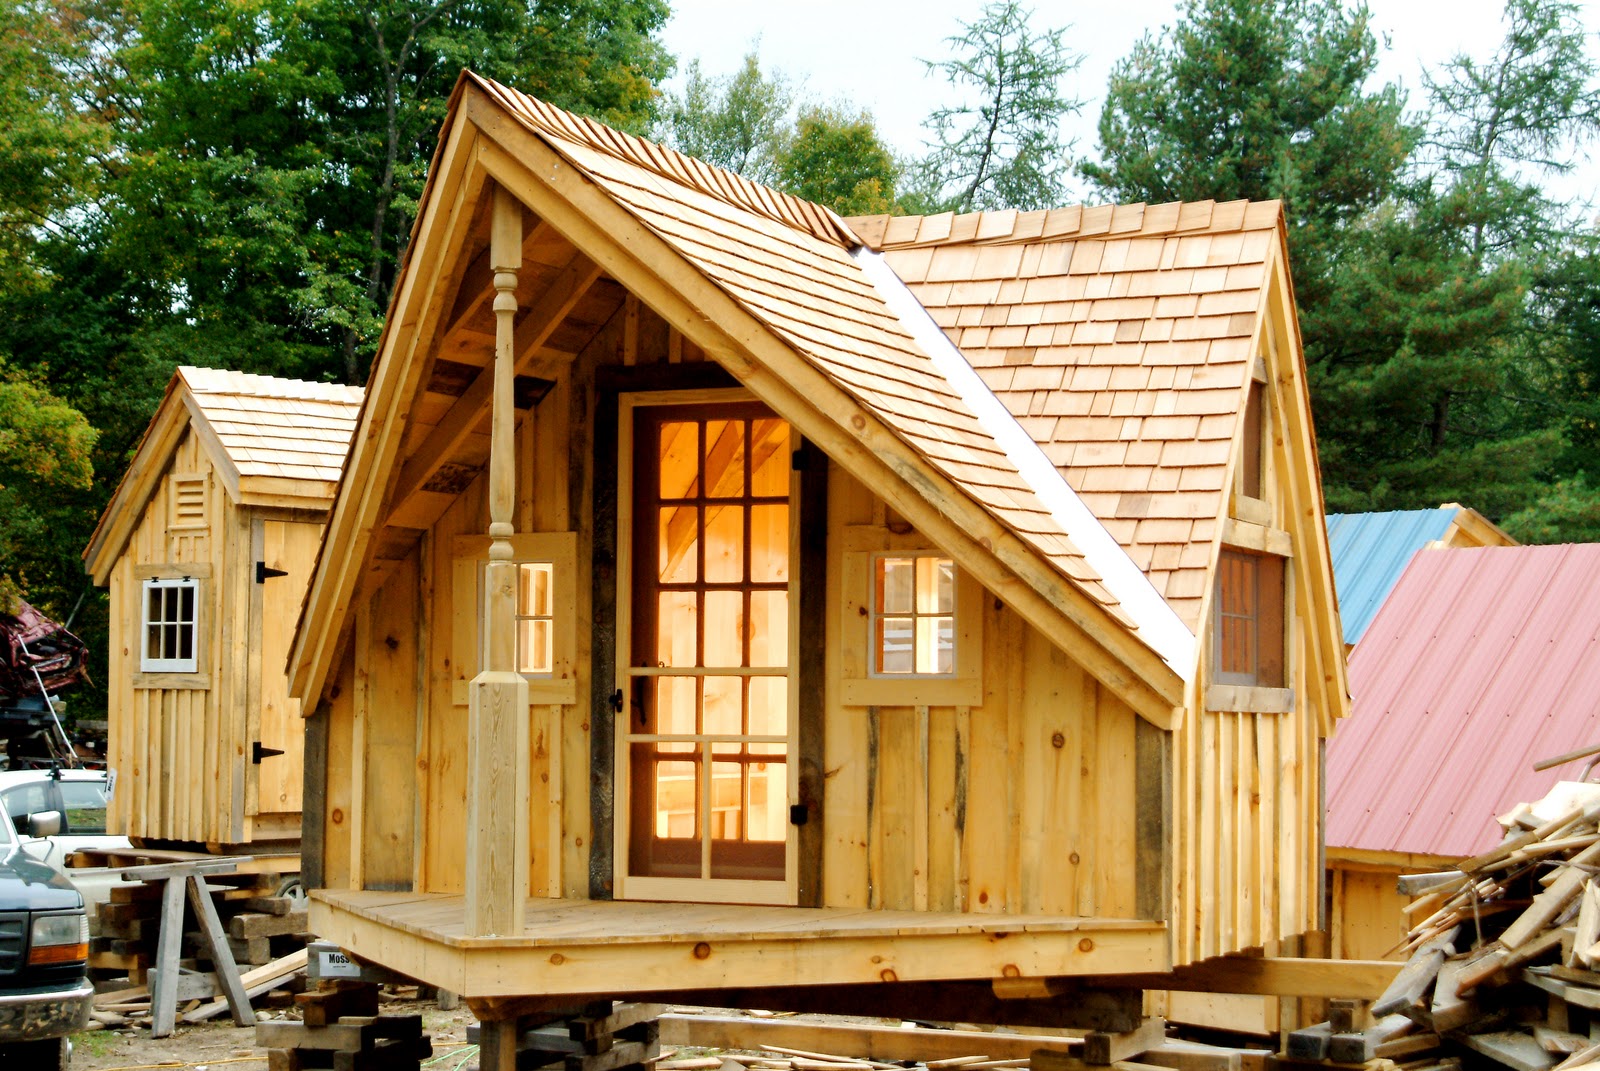  uncategorized diy garden shed diy pallet house diy wooden shed